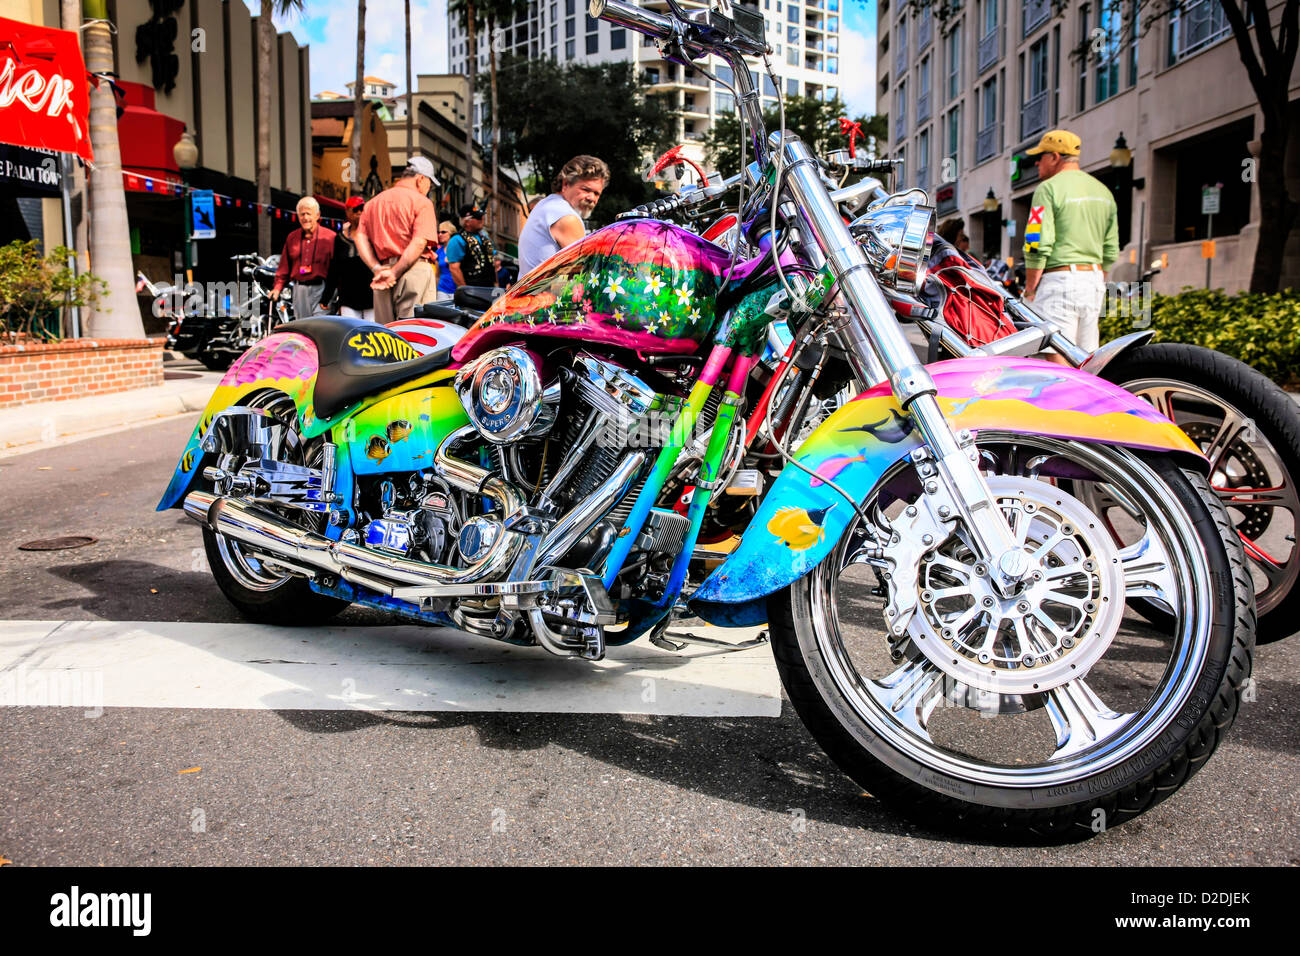 Travail de peinture Psychodelic sur une Harley au Thunder Bay dans le cas de moto à Sarasota en Floride Banque D'Images